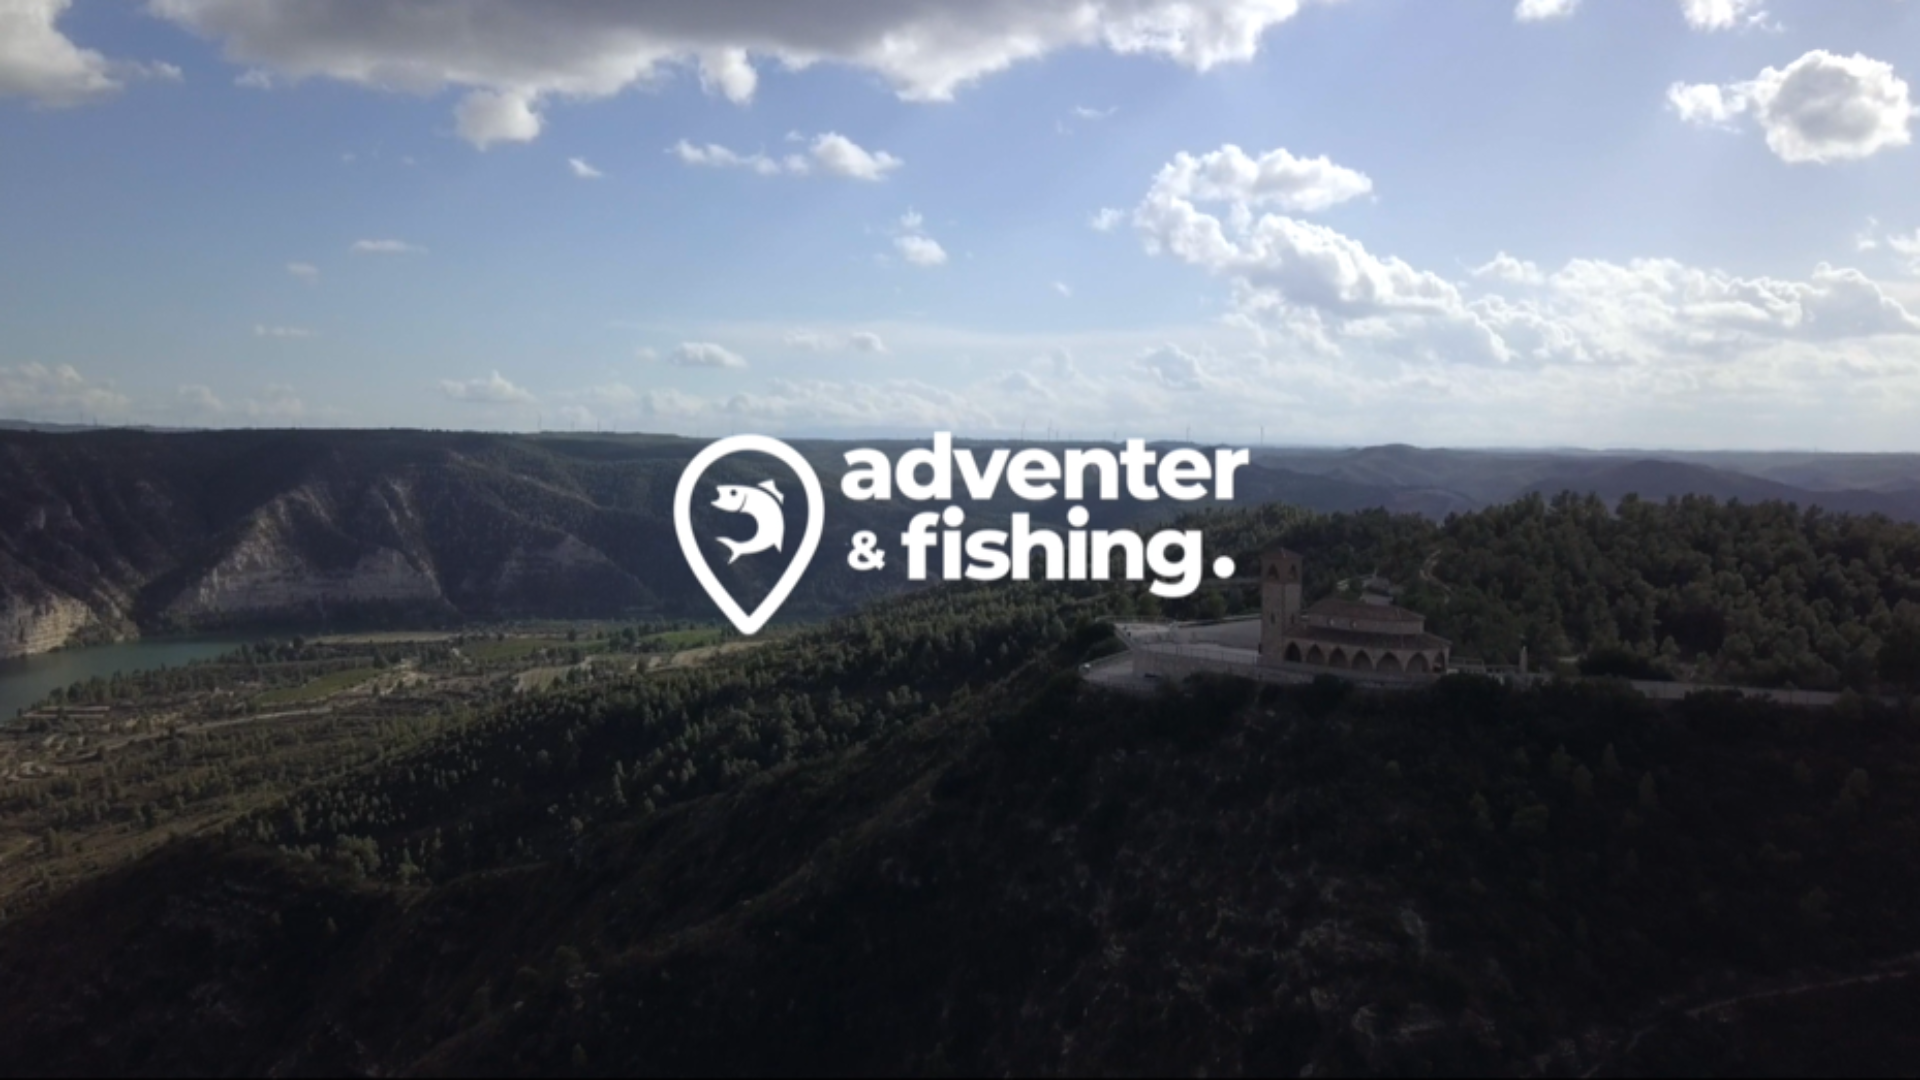 Adventer & fishing - TV sponzorský reklamní spot 